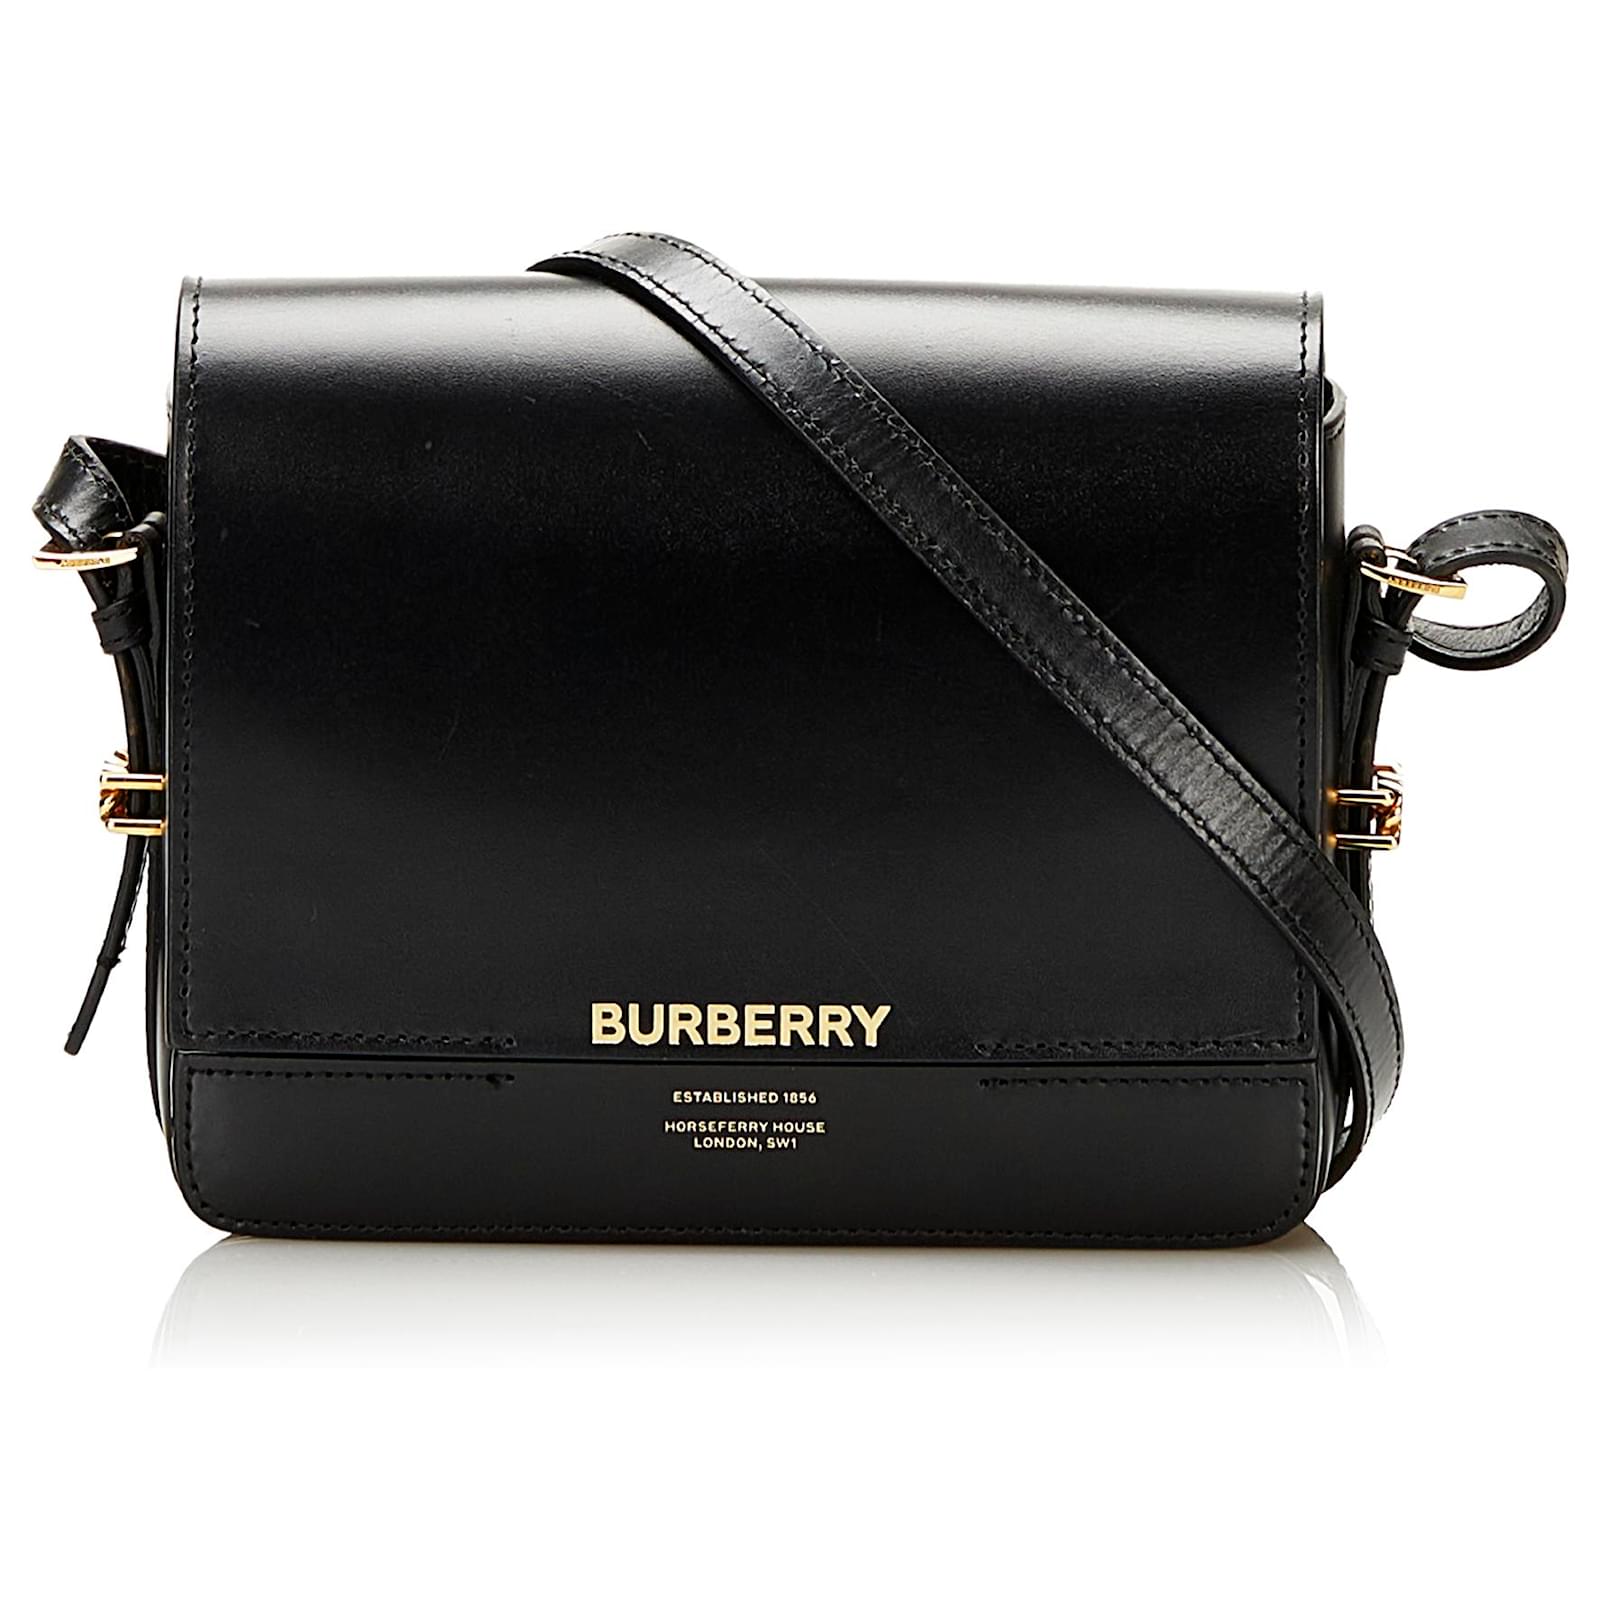 Burberry Grace Leather Shoulder Bag, Black